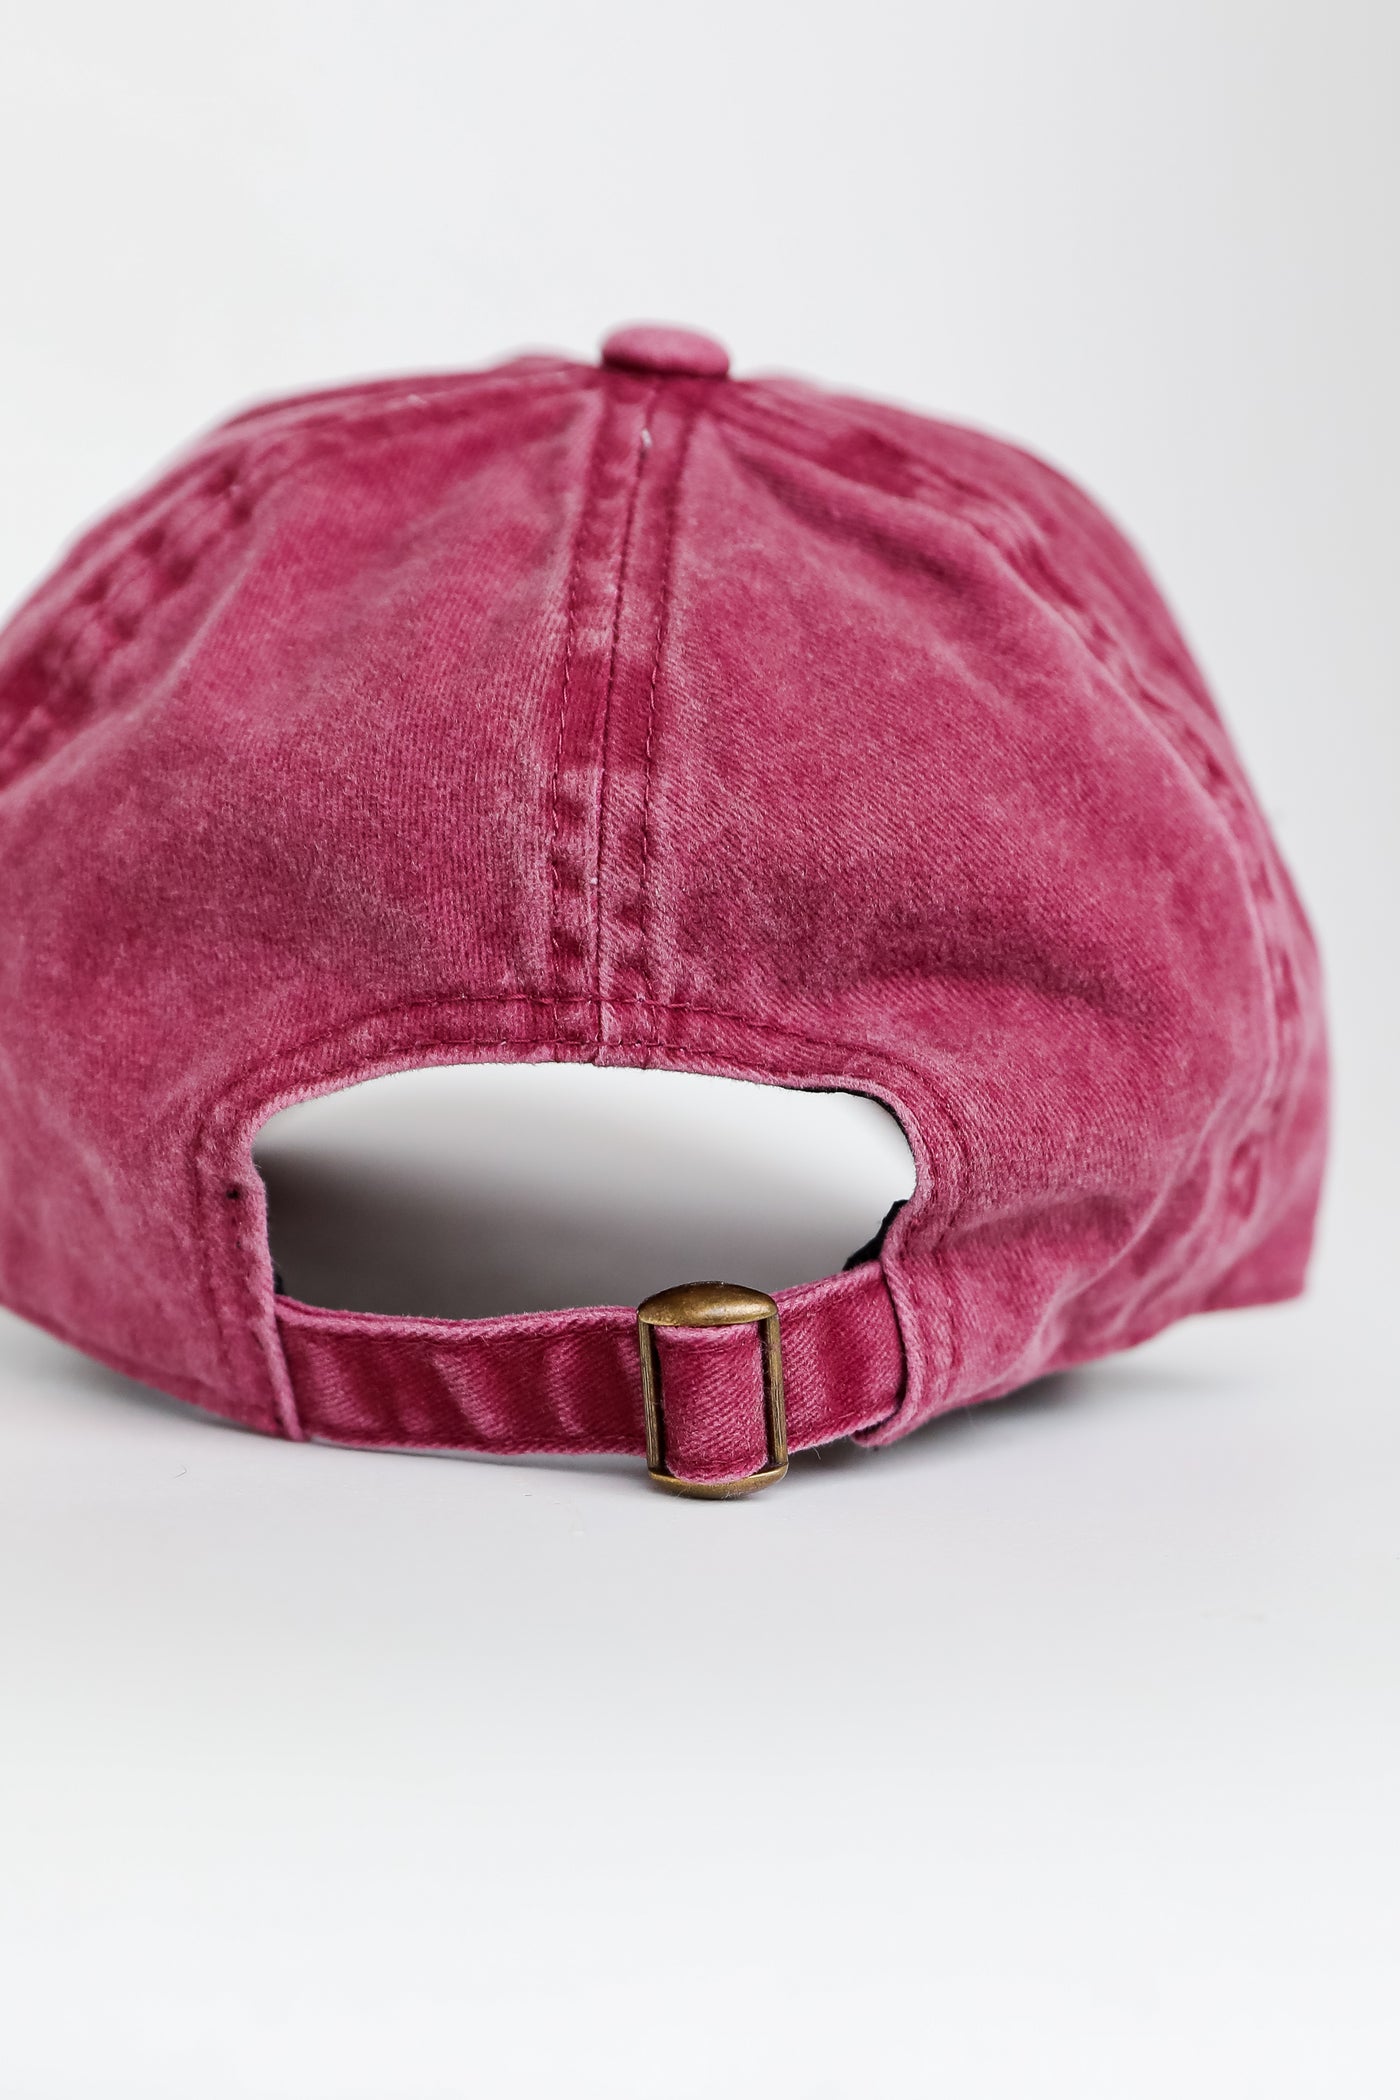 Alabama Vintage Embroidered Hat back view